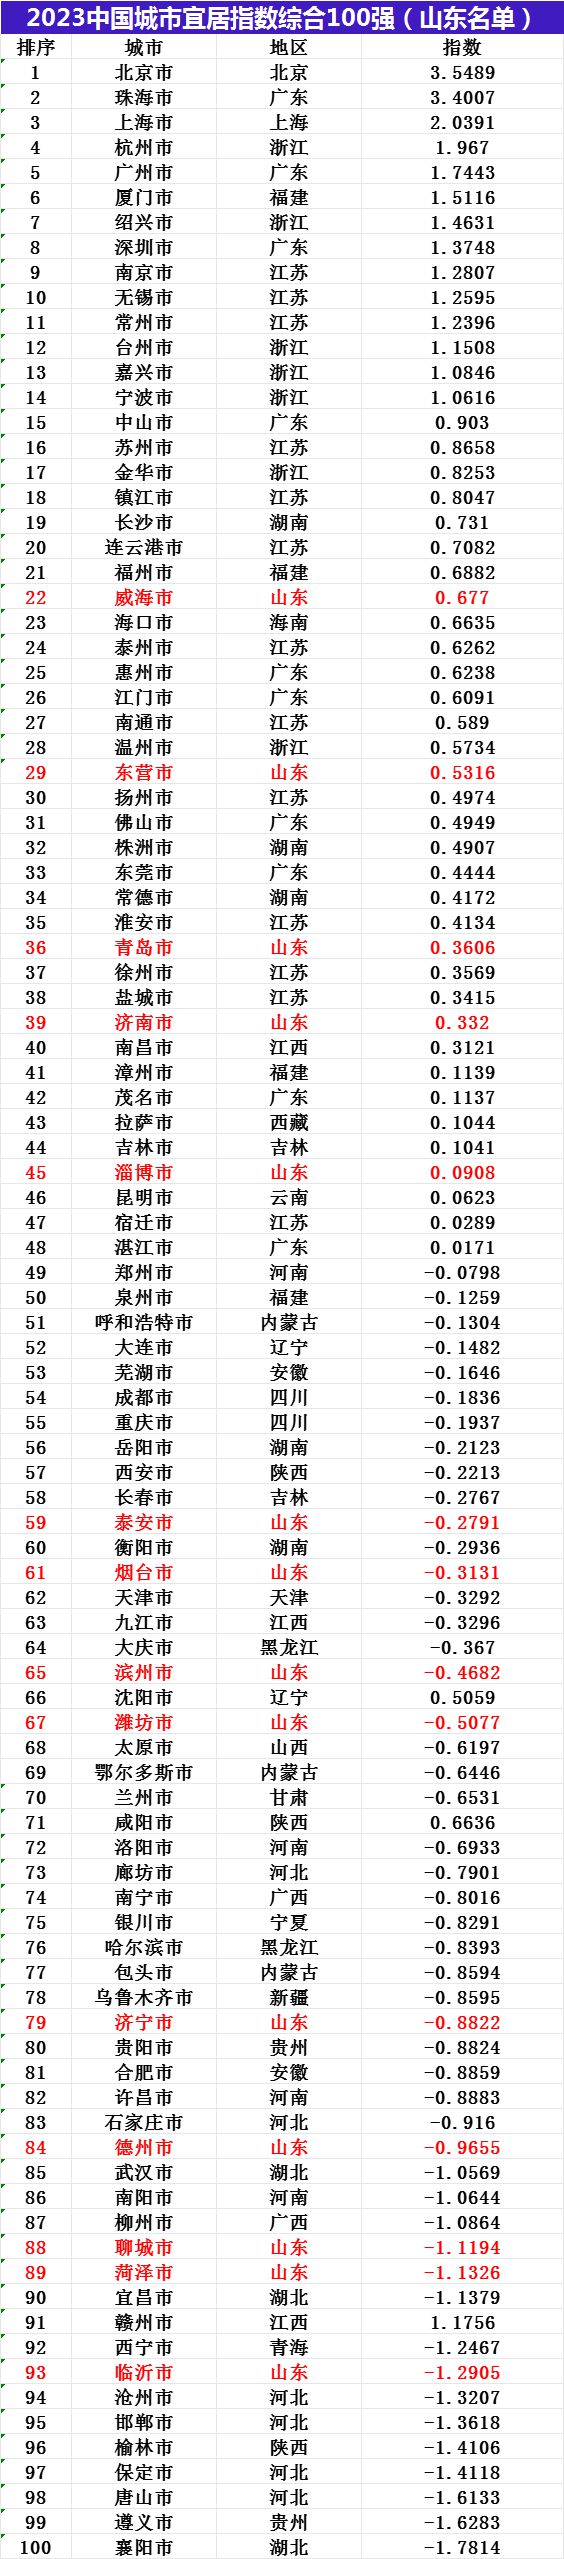 中国十大宜居养老城市 国内最适合居住的10个城市百强排行榜